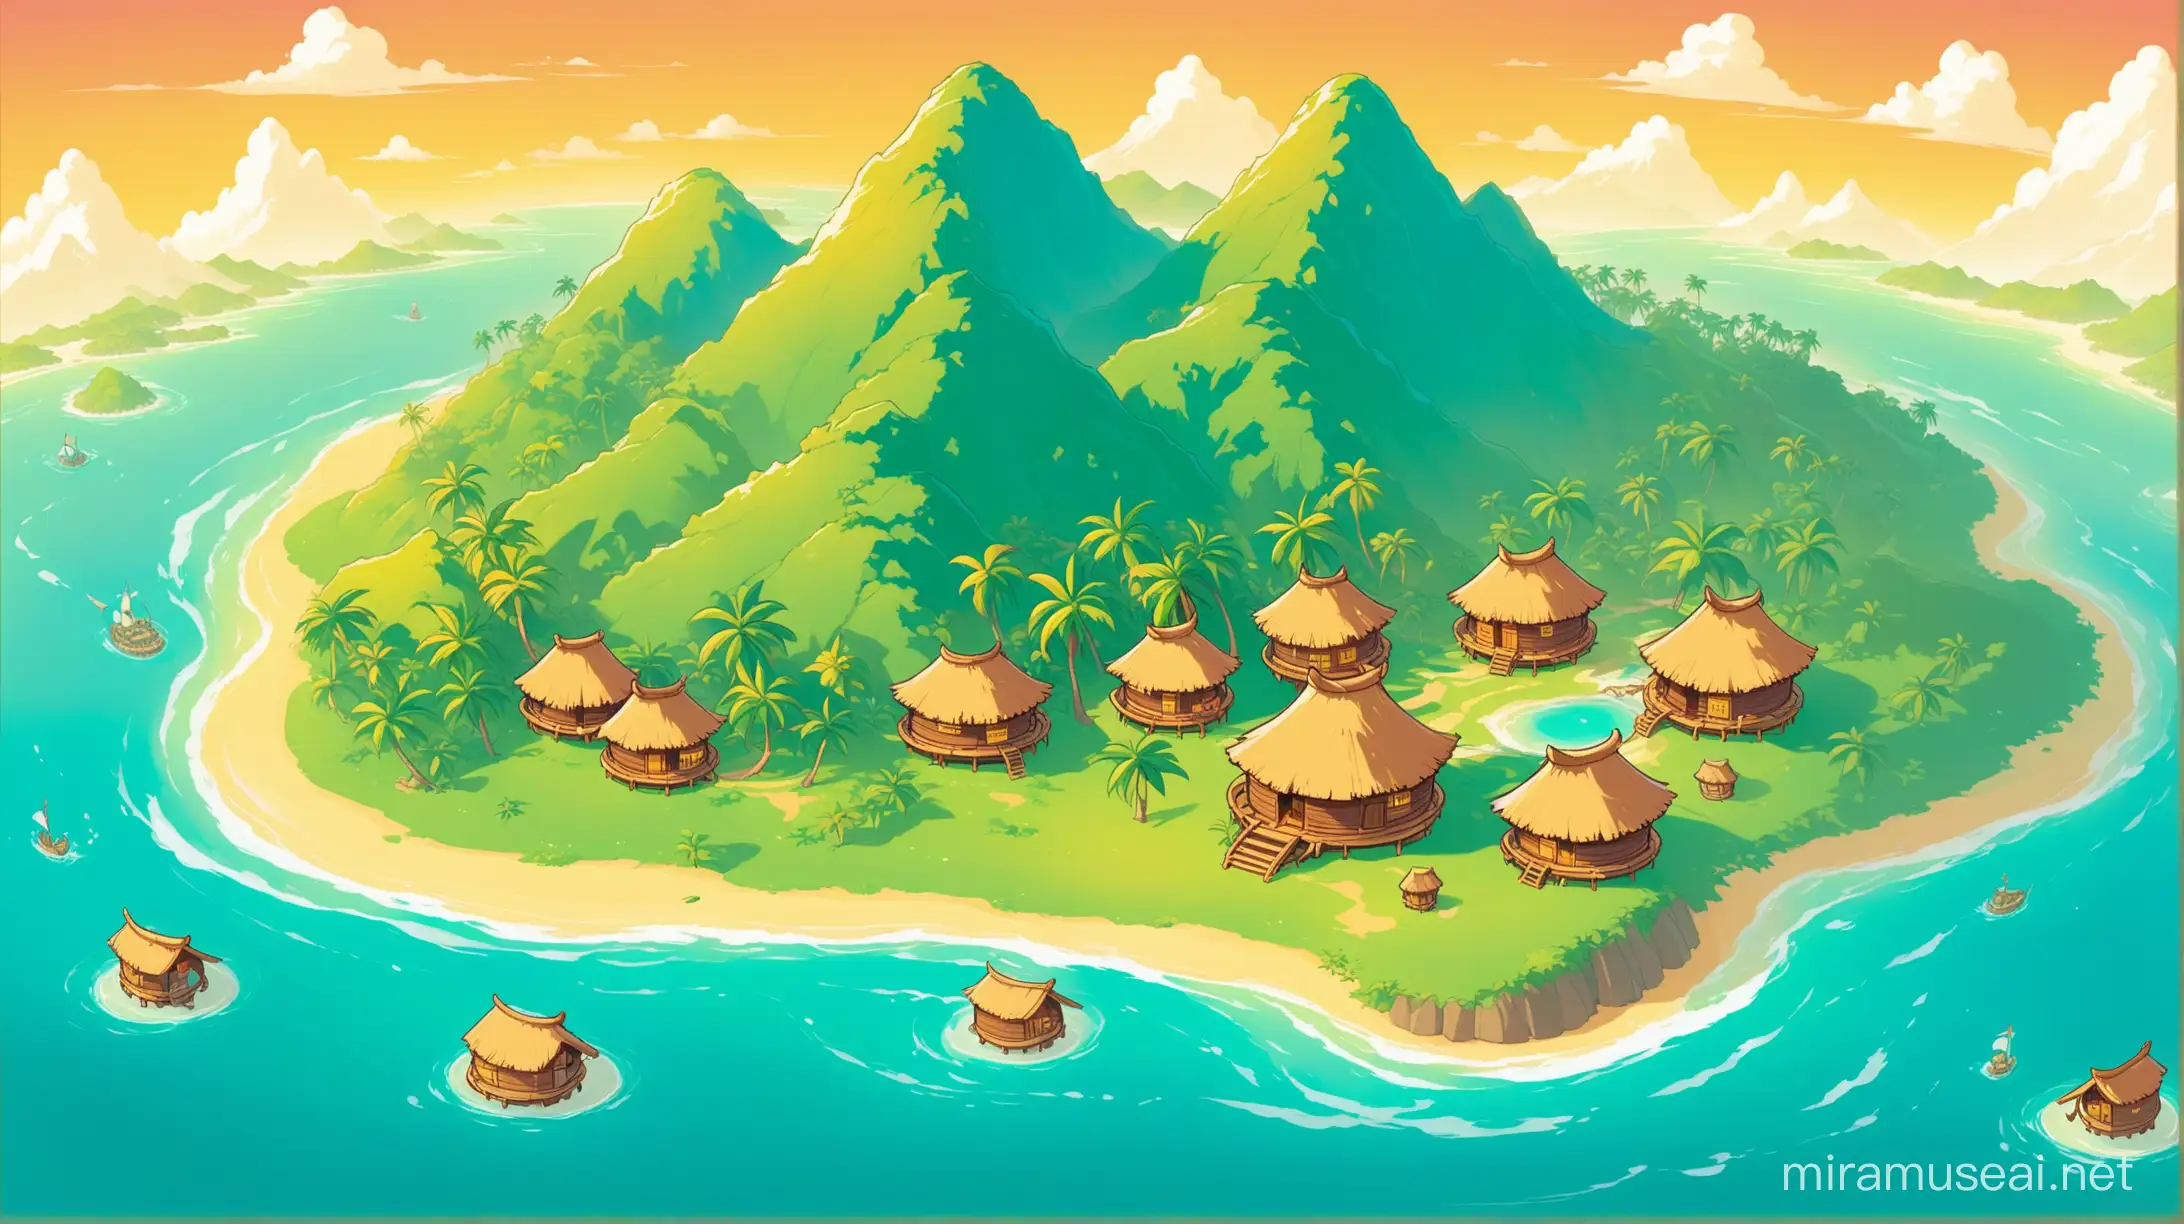 Prise de vue aérienne un peu de côté d'une île, avec une montagne avec des cases mélanésiennes rondes présente sans exagération, style dessin en couleur, avec une inspiration wakfu